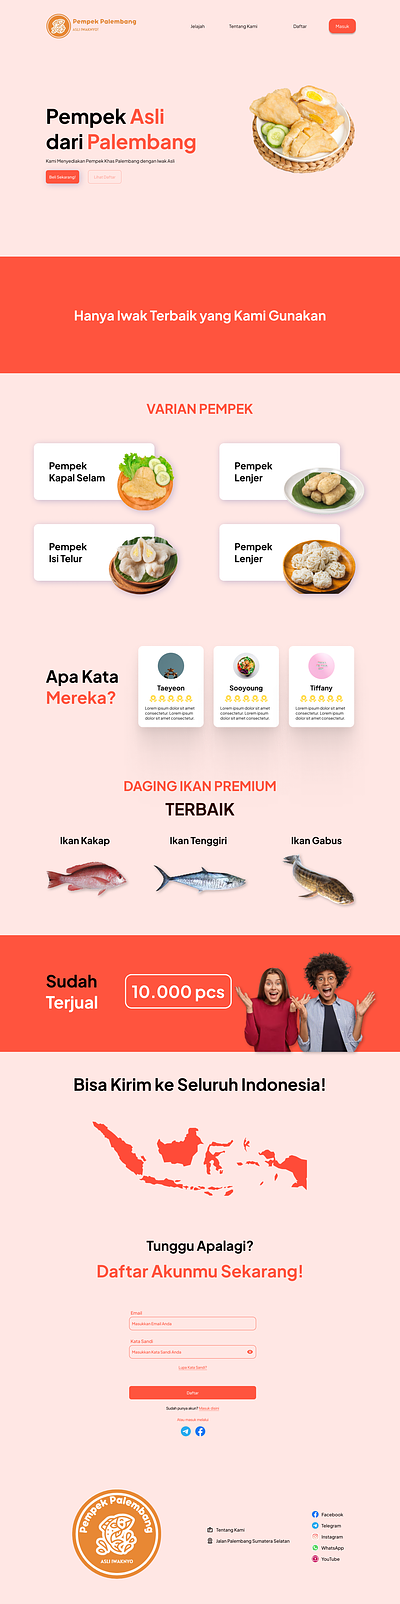 Landing Page - Pempek Palembang #DailyUI design food indonesia indonesian landing page palembang pempek ui ui design uichallenge uidaily uiux uiux designer